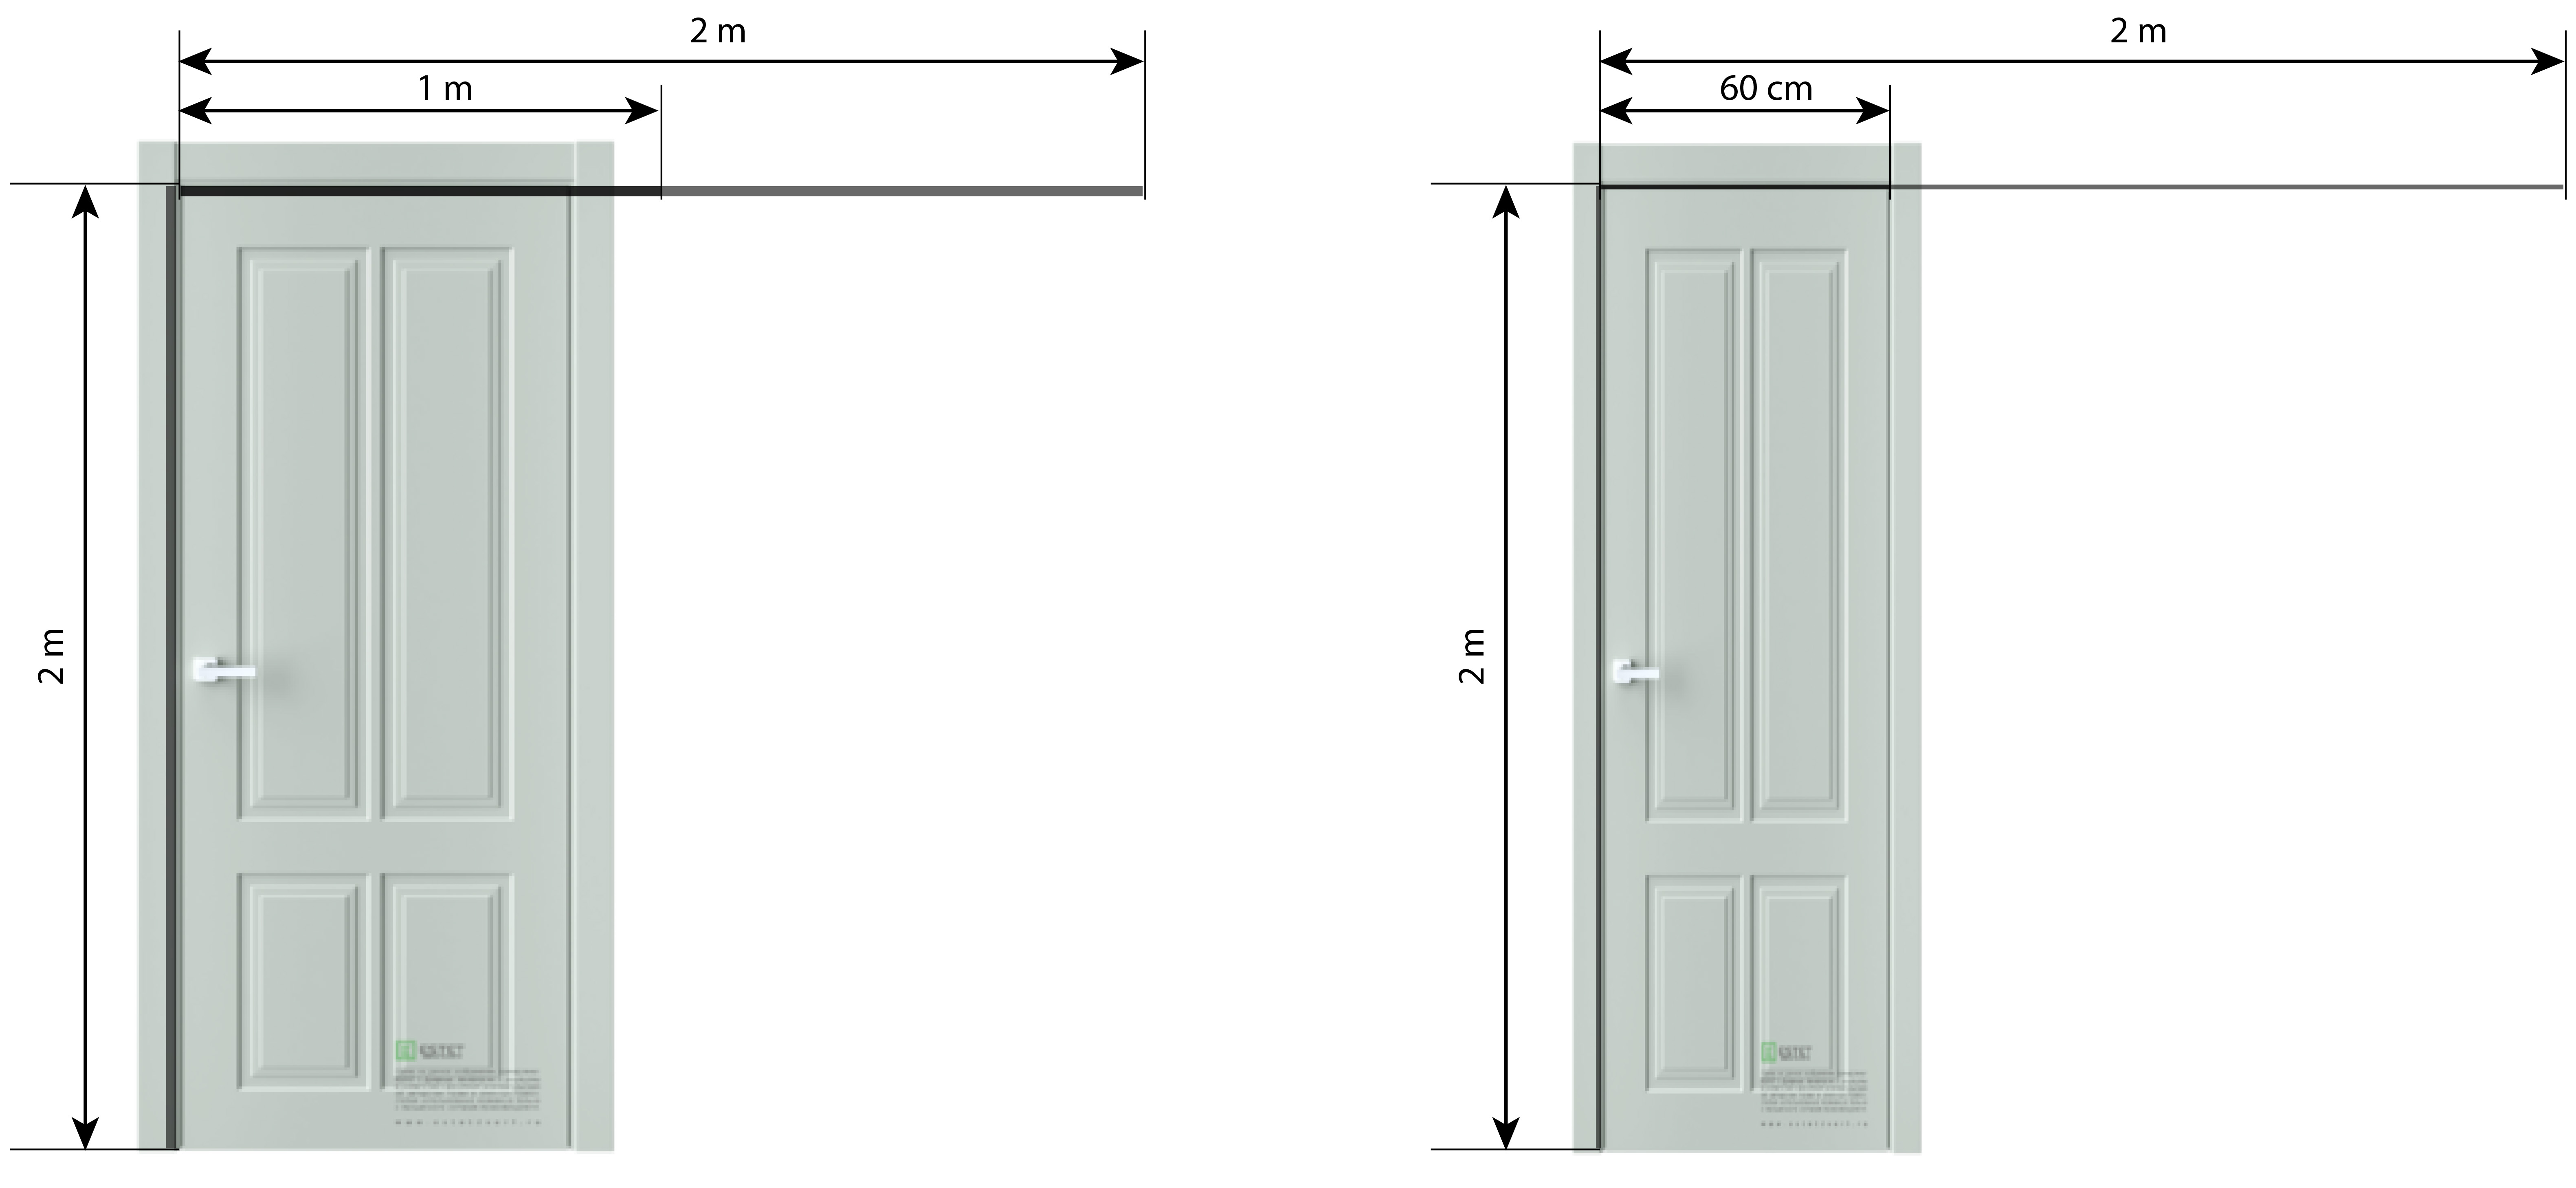 Стандартные межкомнатные двери размеры:  межкомнатных дверей .